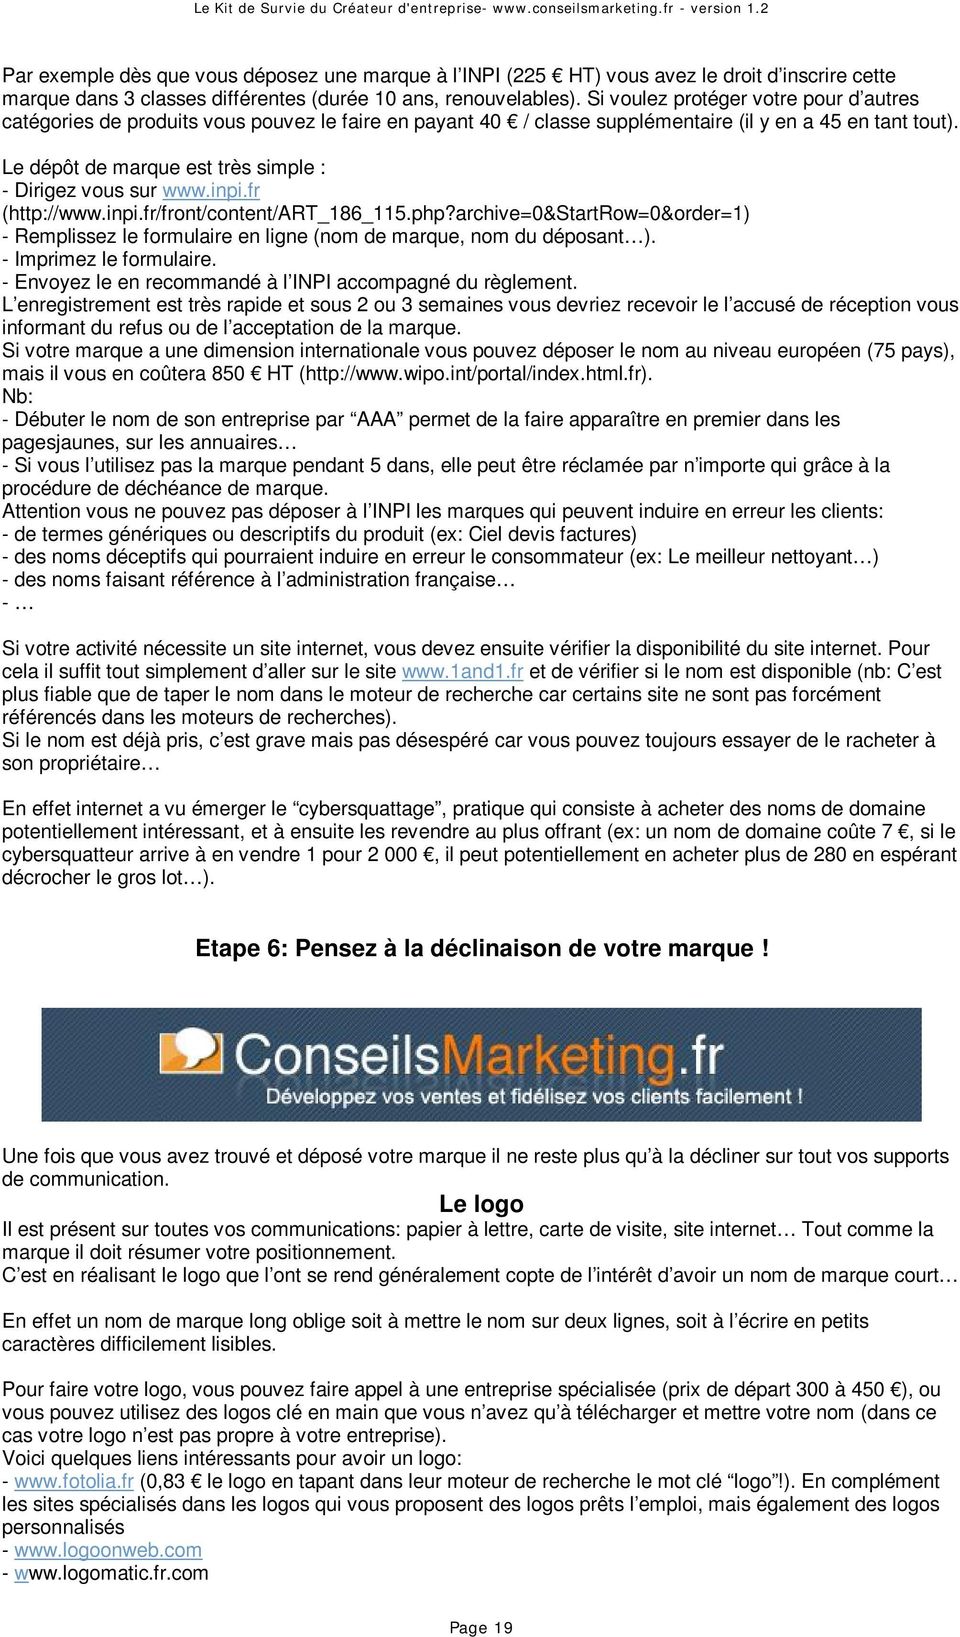 Le dépôt de marque est très simple : - Dirigez vous sur www.inpi.fr (http://www.inpi.fr/front/content/art_186_115.php?